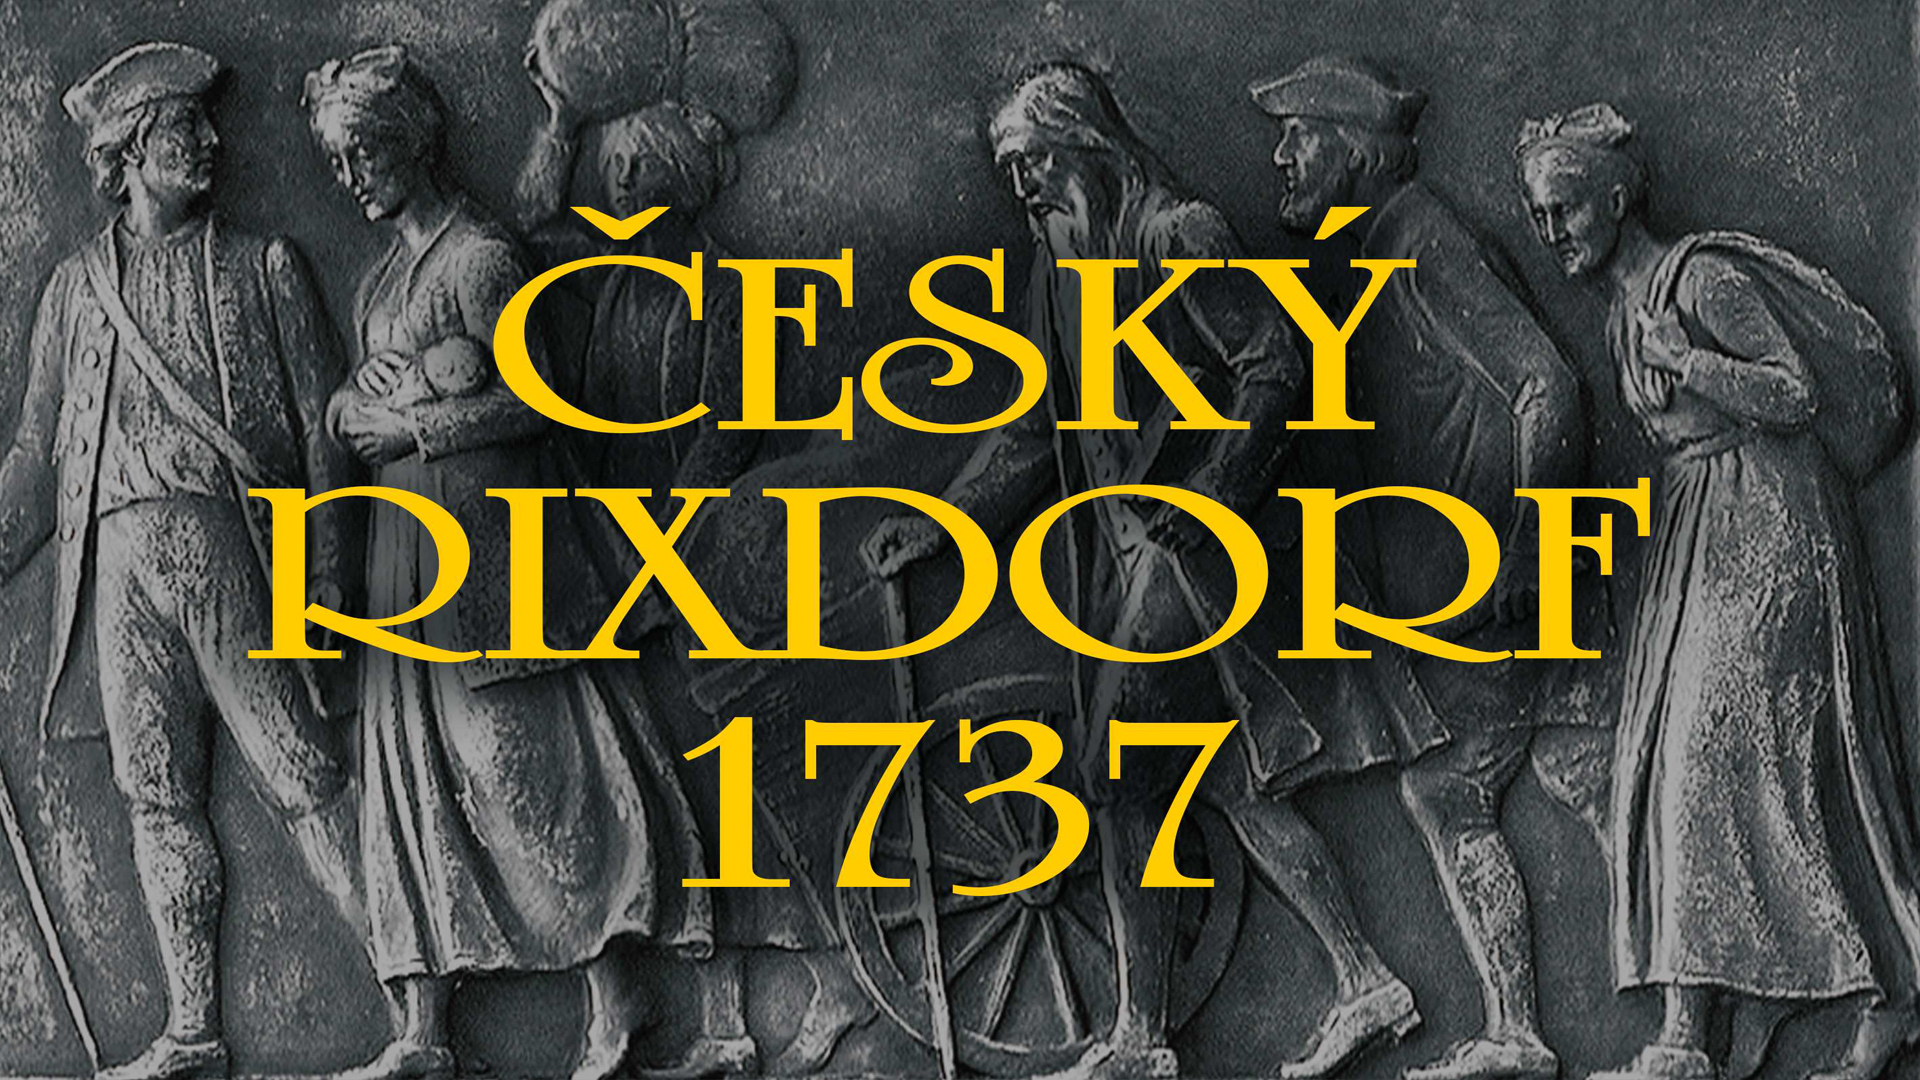 Český Rixdorf 1737 